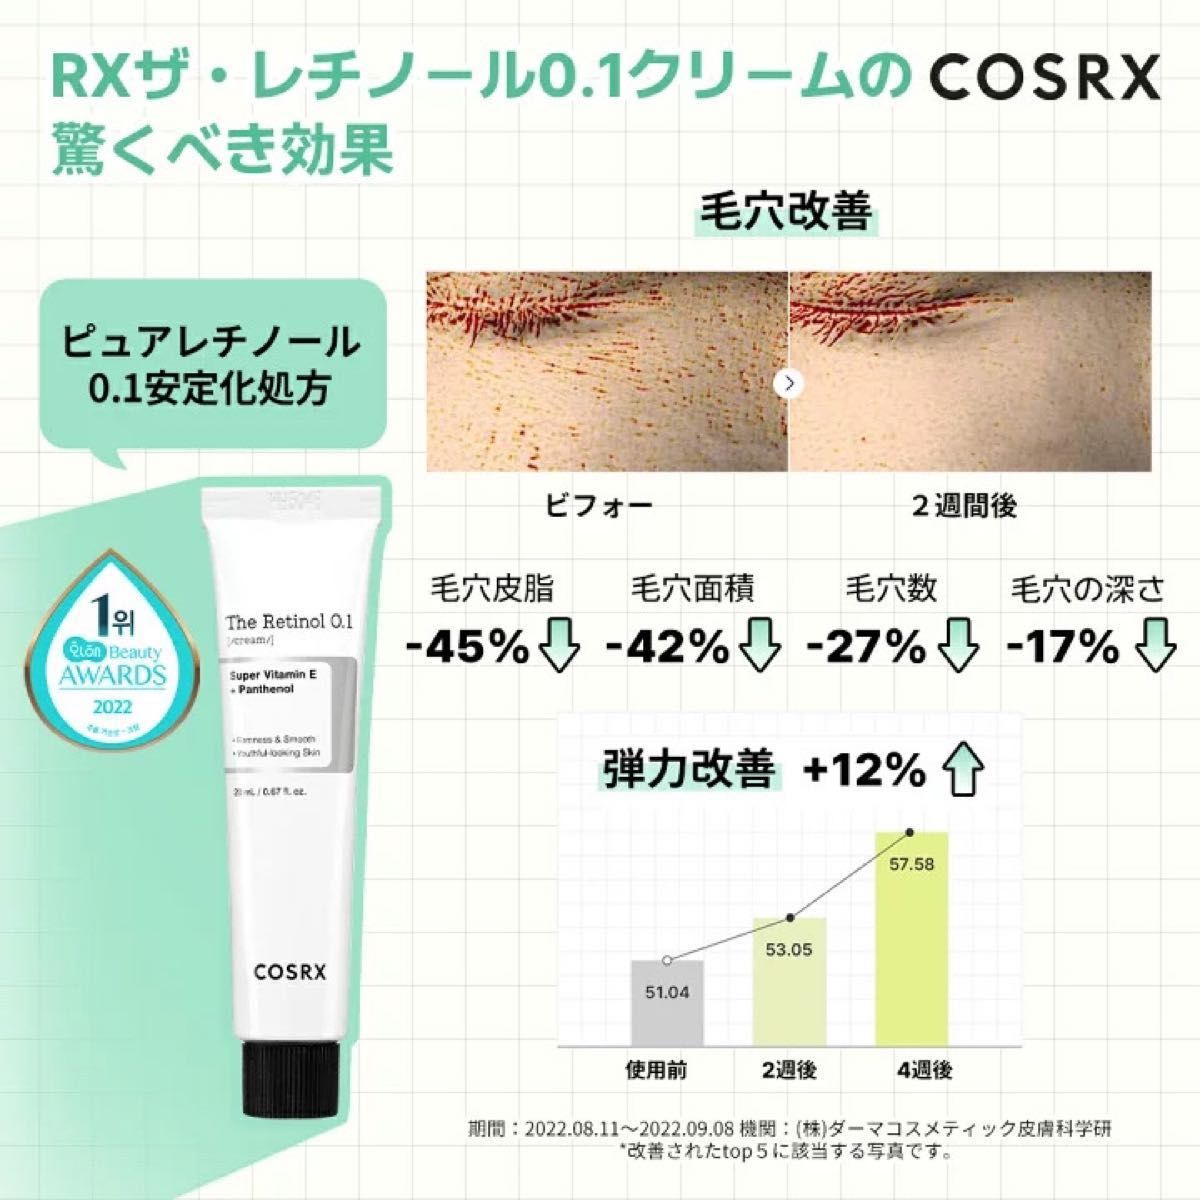 【新品未使用】COSRX ザ・レチノール 0.1クリーム 20ml